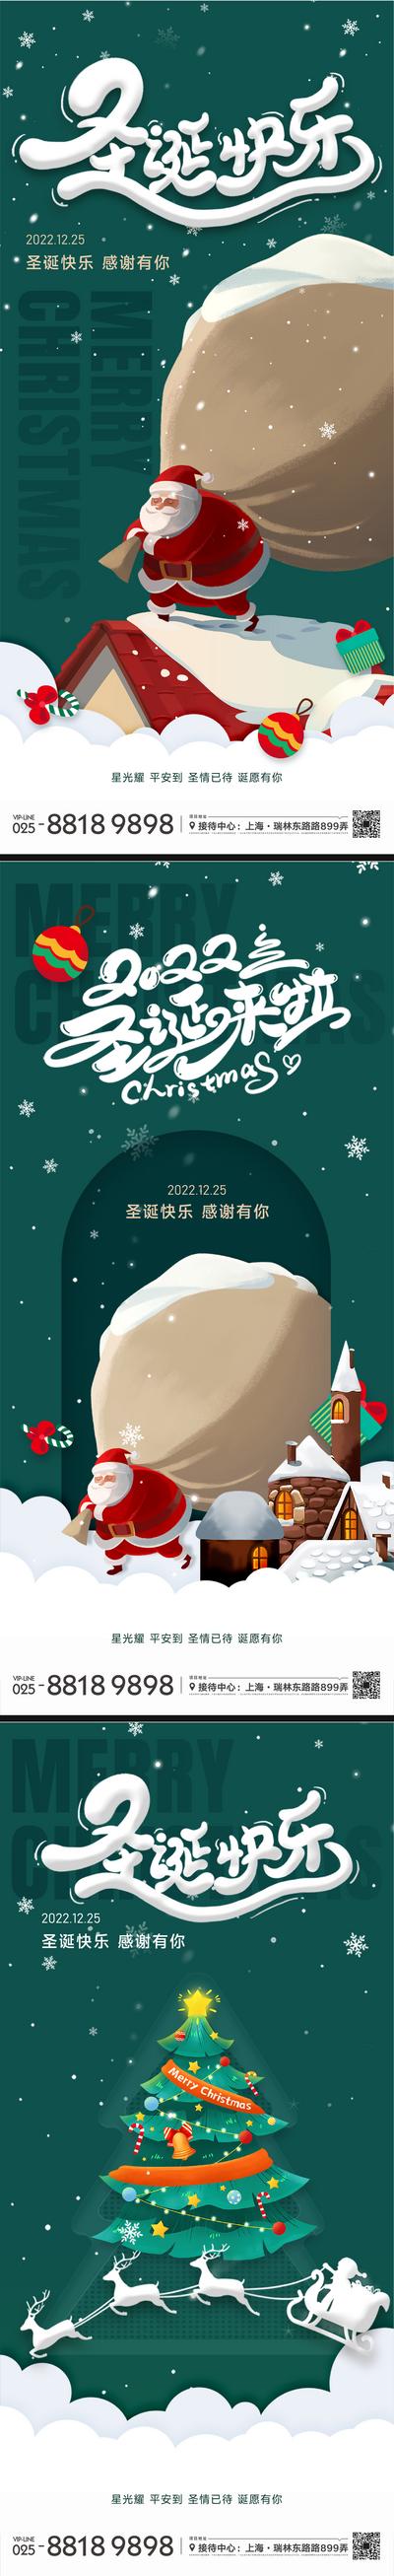 南门网 圣诞节系列海报